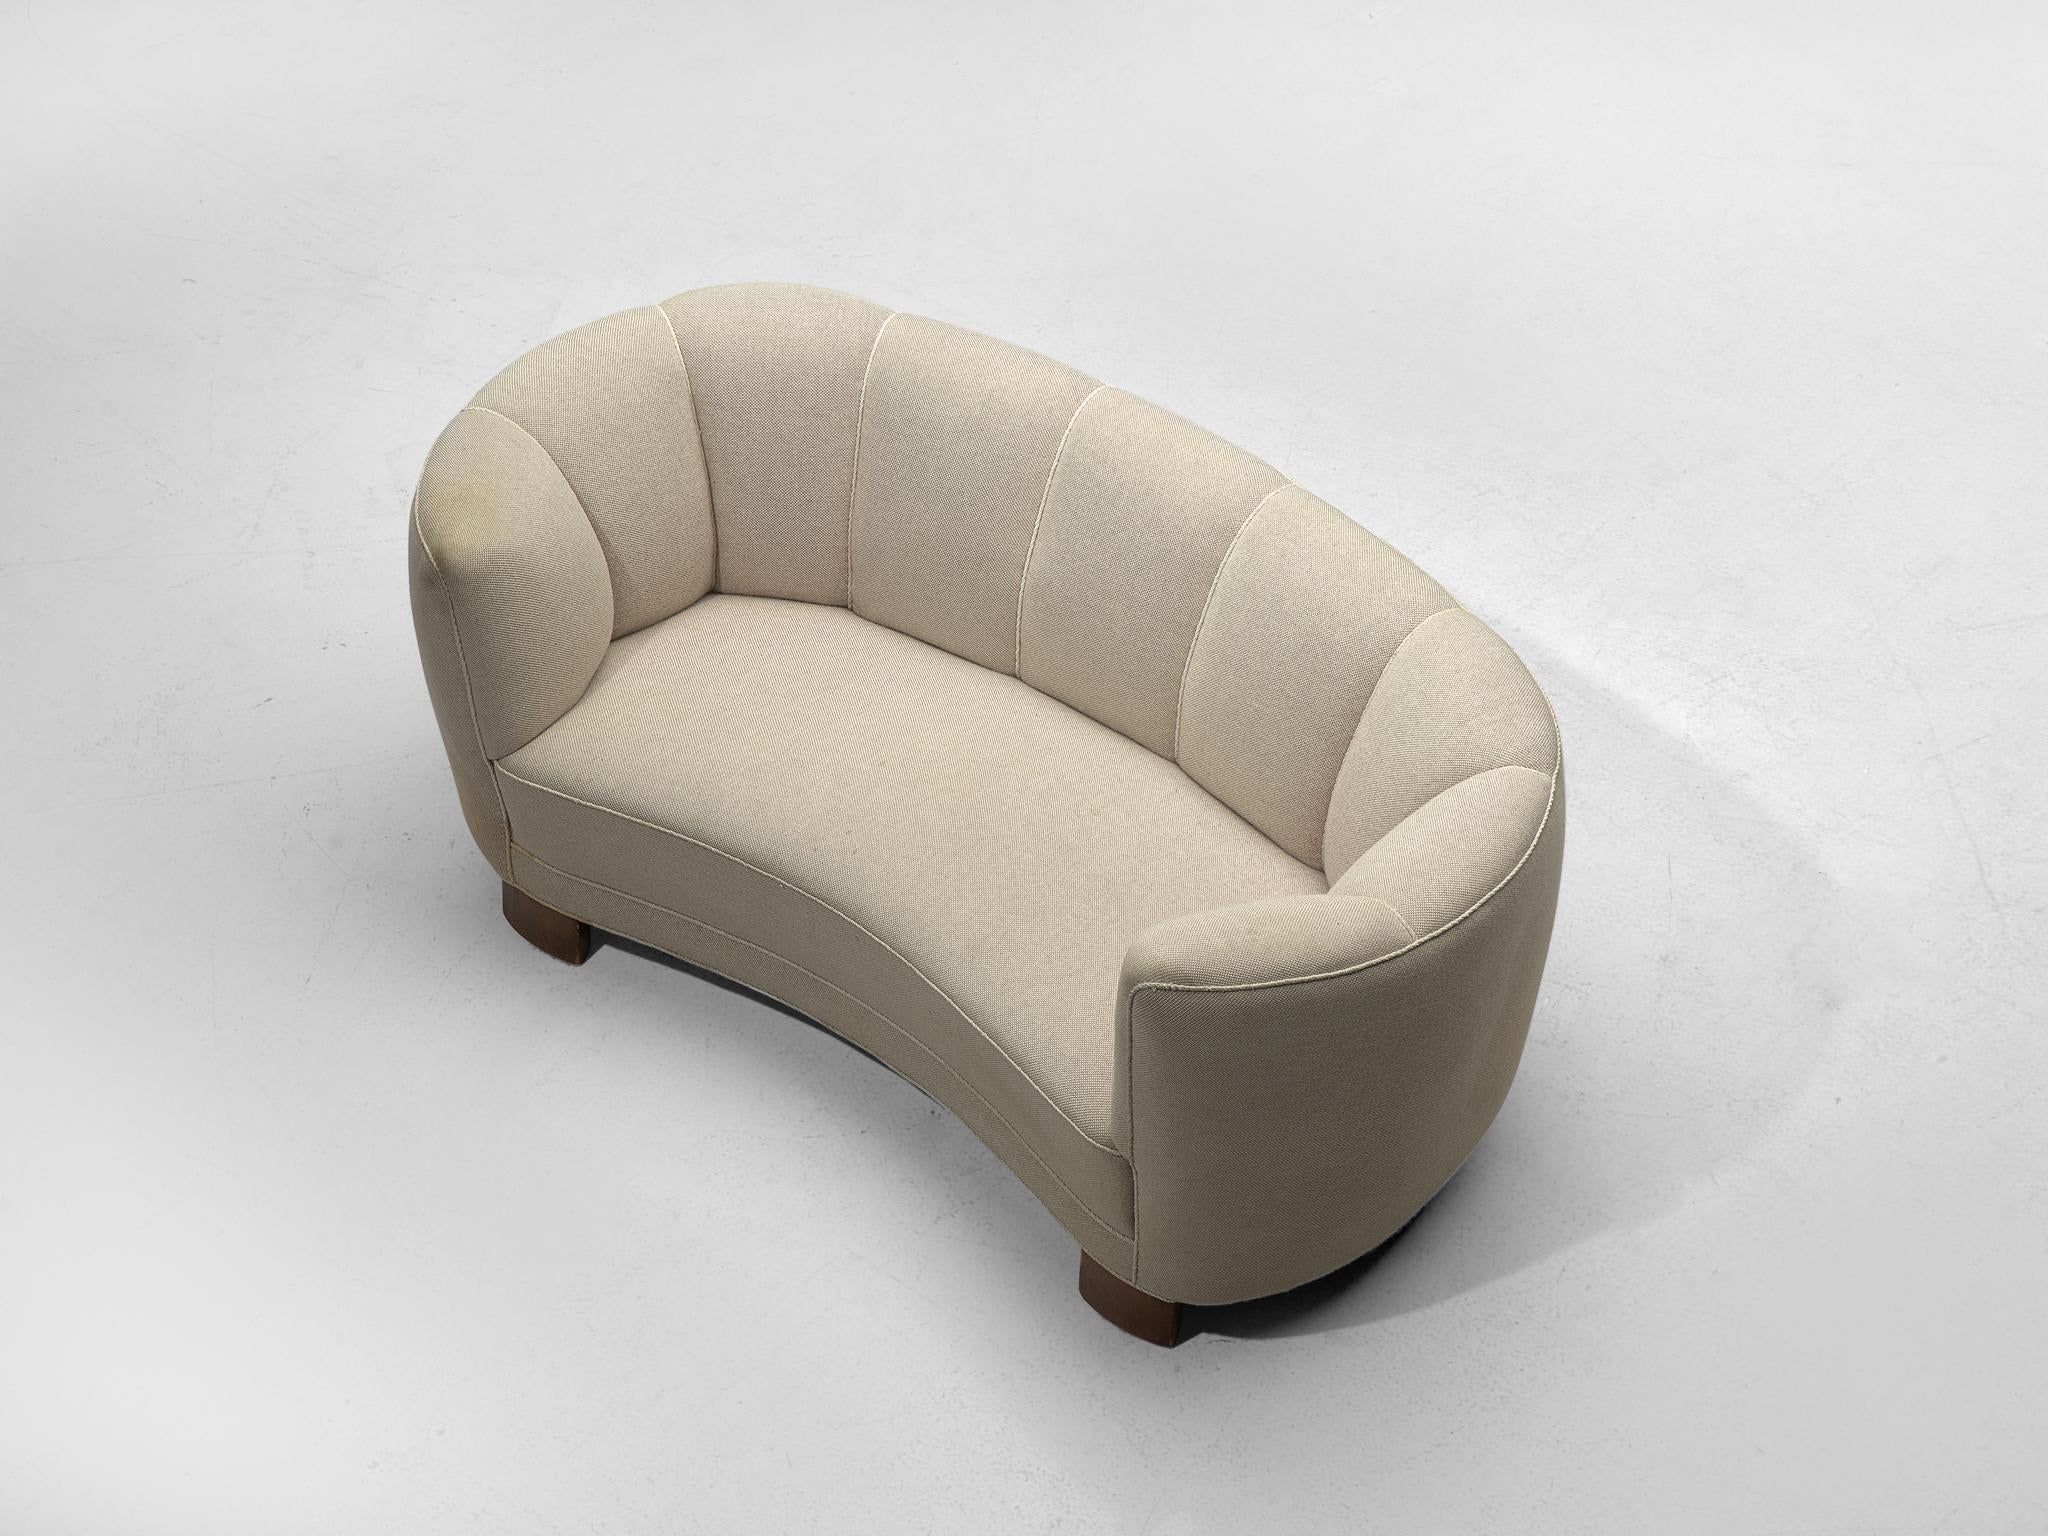 Mid-20th Century Danish Banana Sofa with Eggshell-White Upholstery